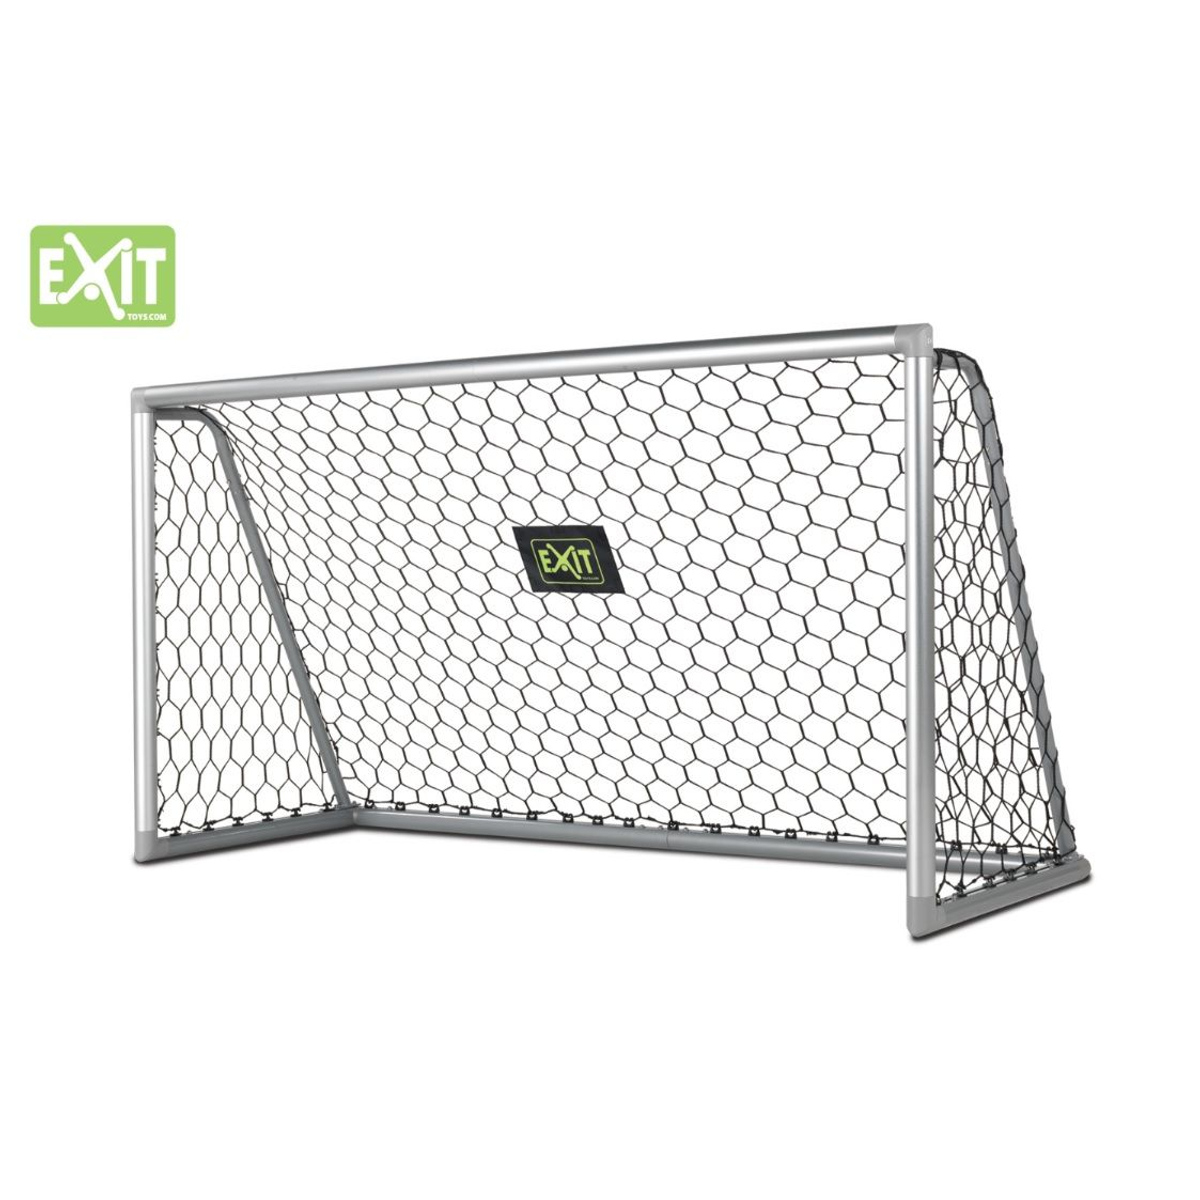 EXIT Scala Aluminium Goal 220x120